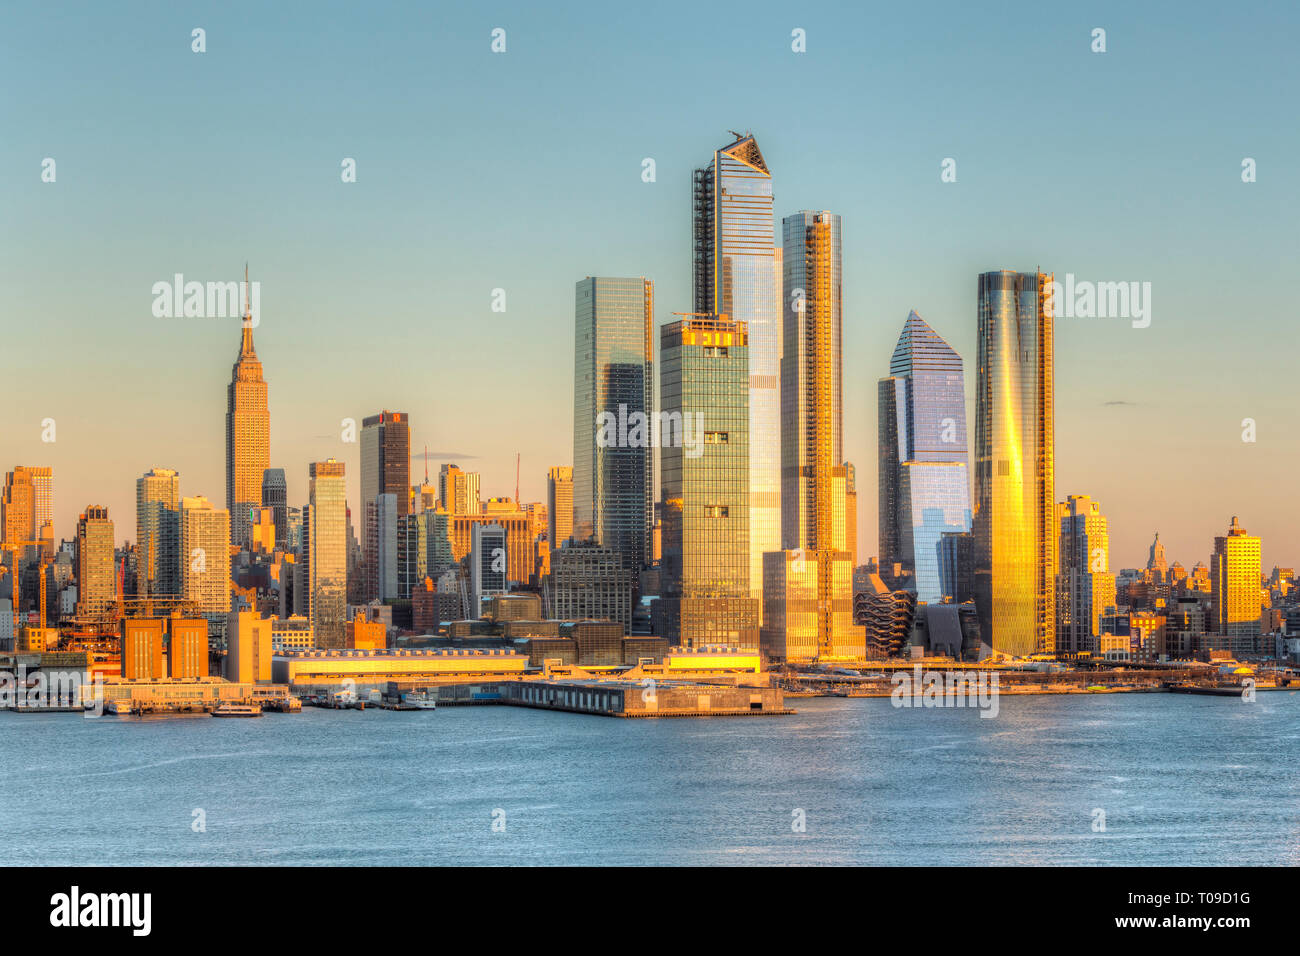 El uso mixto de desarrollo inmobiliario astilleros Hudson y otros edificios en el lado oeste de Manhattan, en la Ciudad de Nueva York al atardecer. Foto de stock